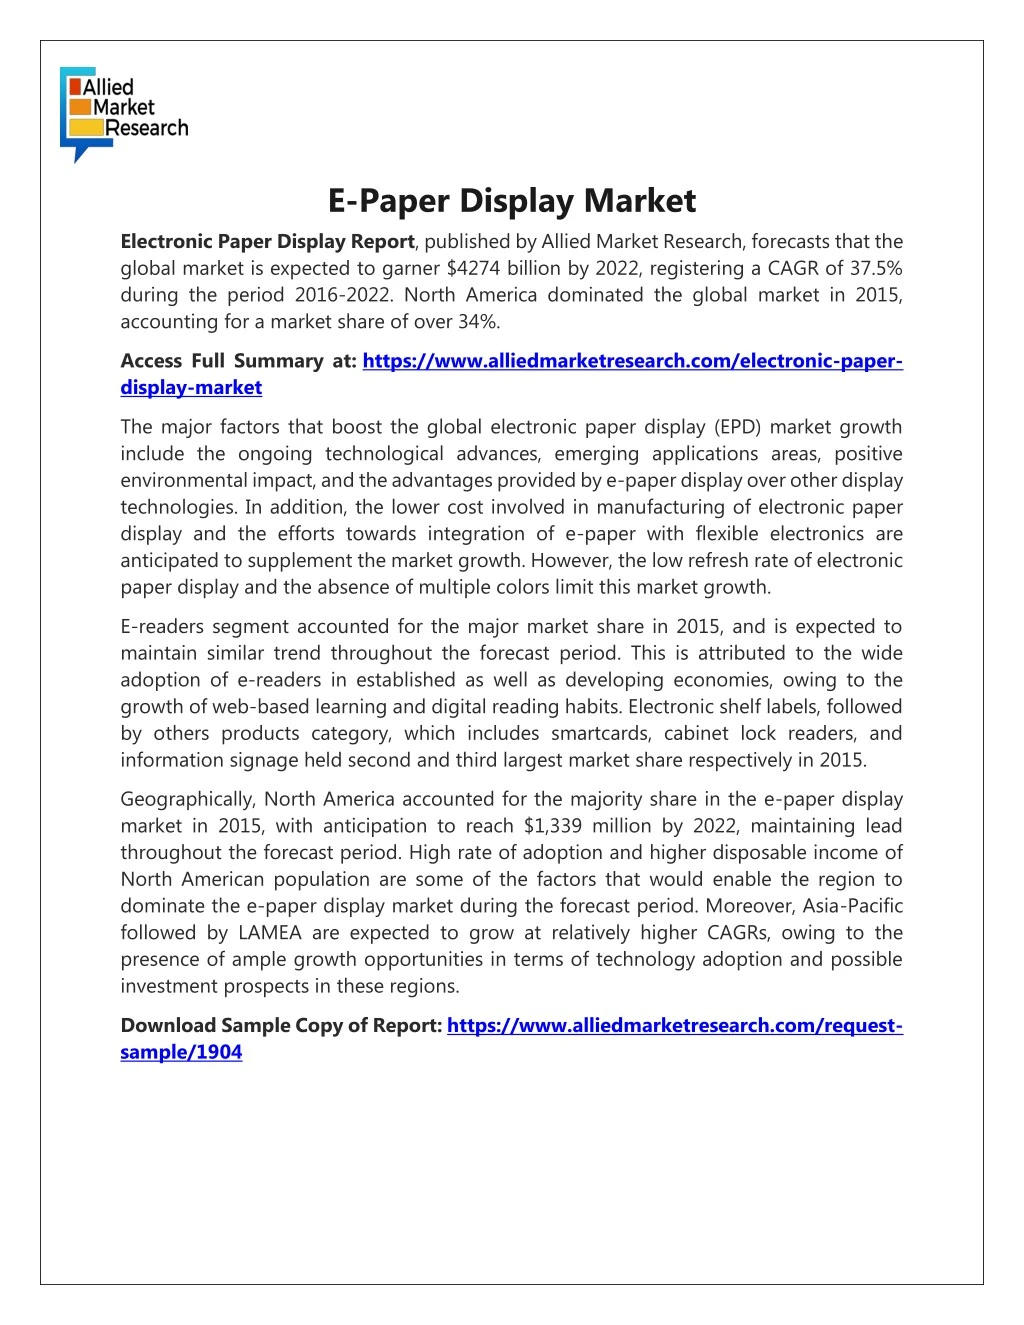 e paper display market